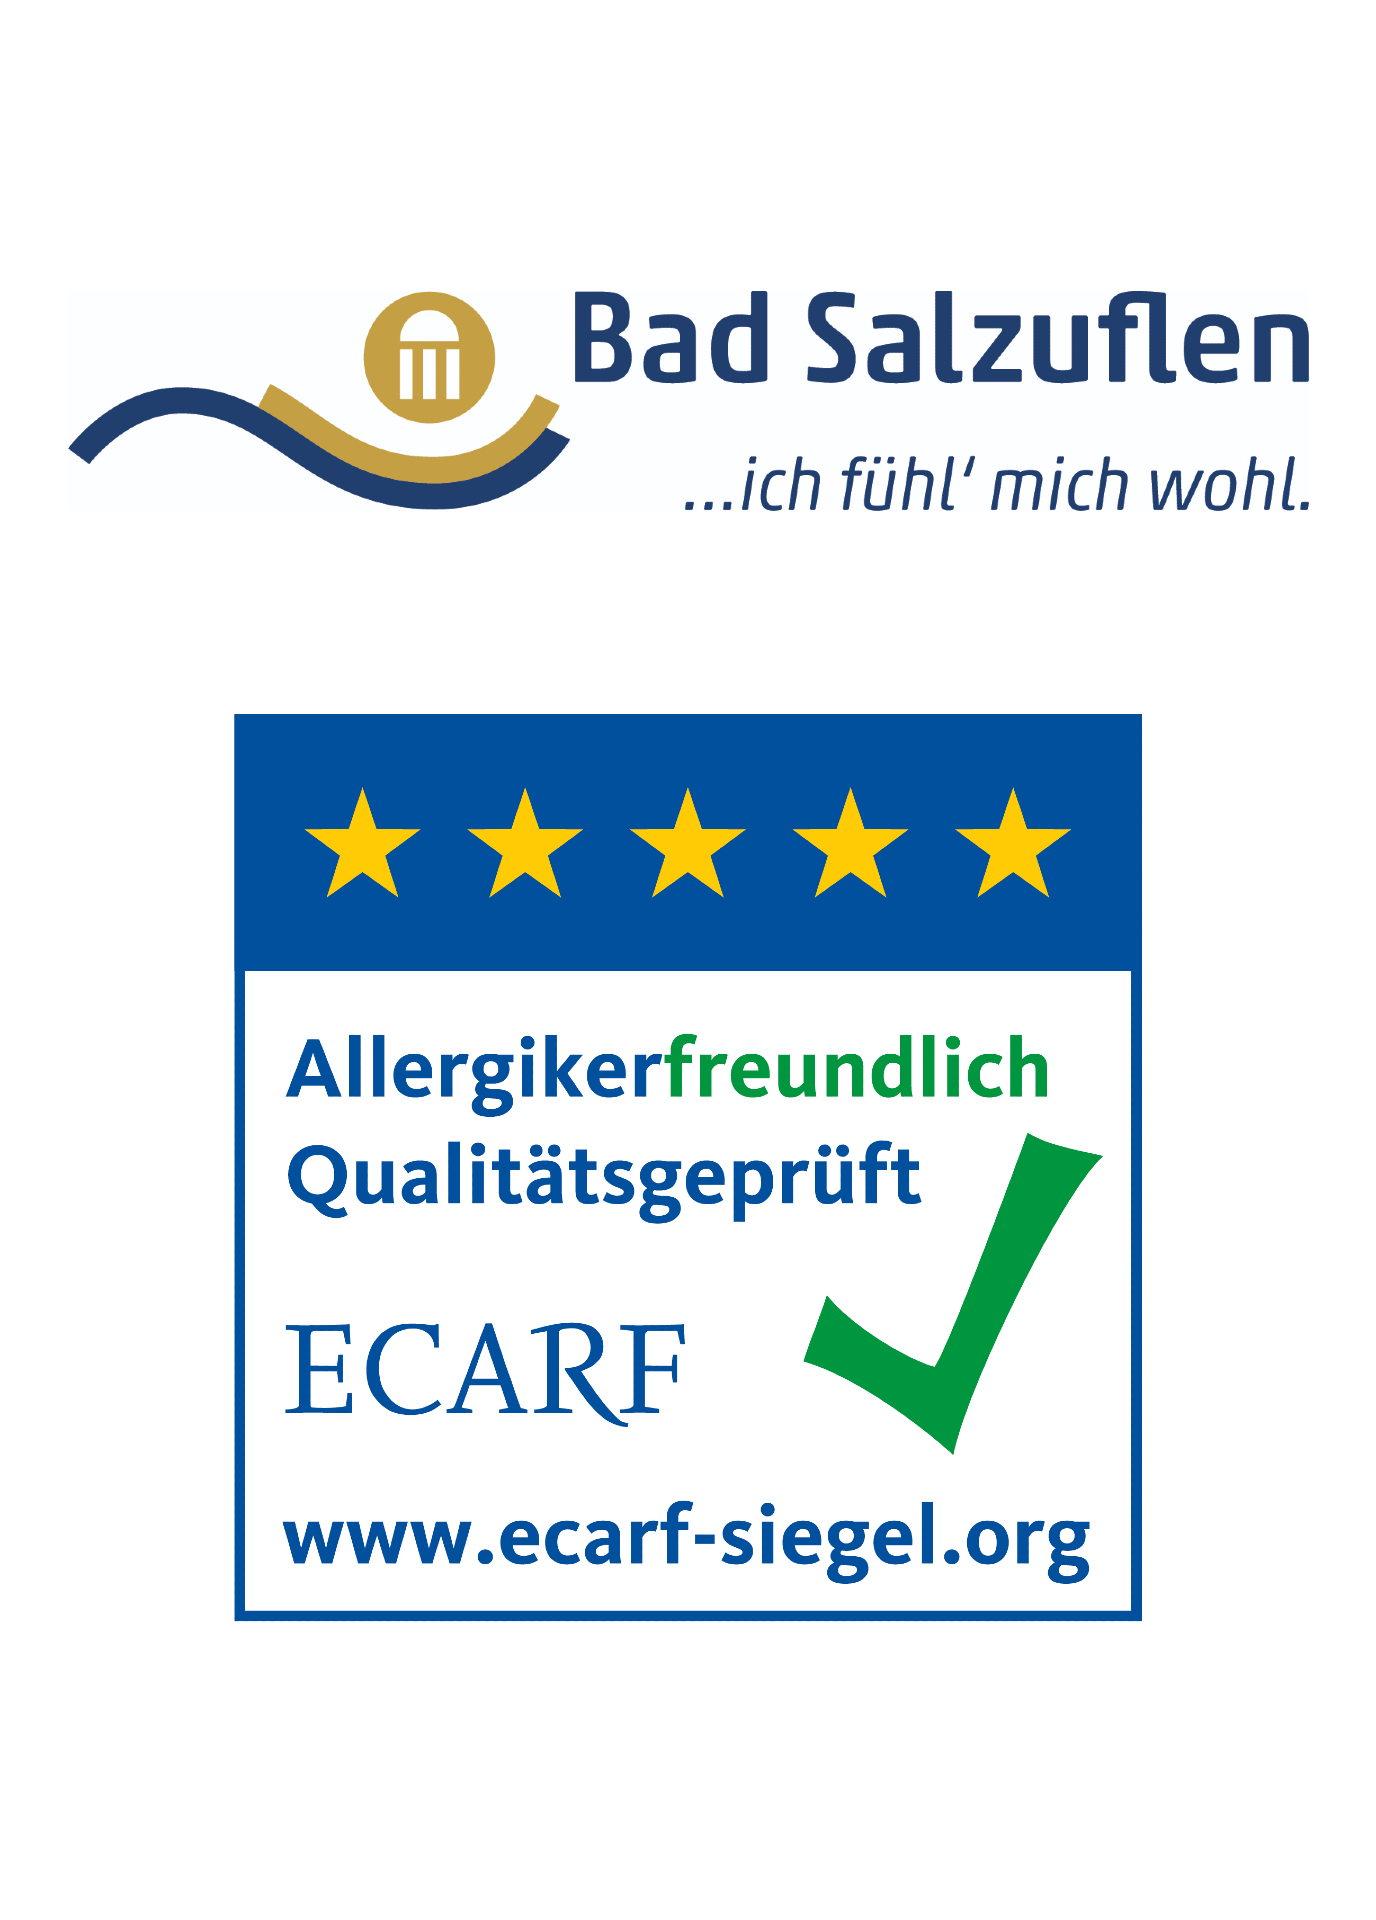 Seit 2017 gilt Bad Salzuflen als ECARF-Zertifizierte Allergikerfreundliche Kommune. Dazu zählen auch Geschäfte in der Innenstadt, wie zum Beispiel einige Restaurants und ein Friseur.